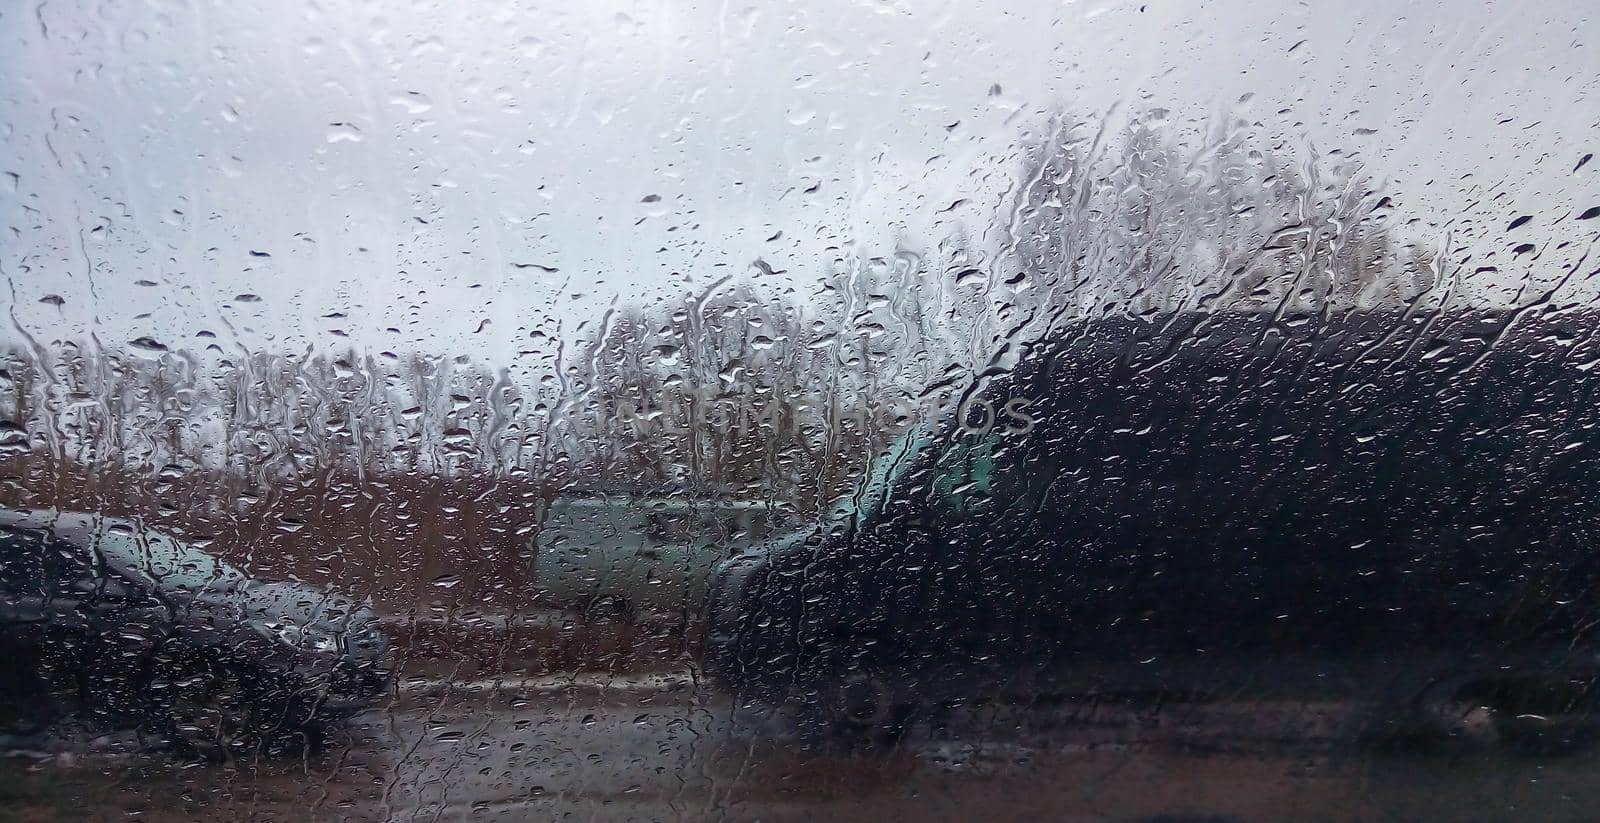 Raindrops on the window pane. Rainy city background by lapushka62